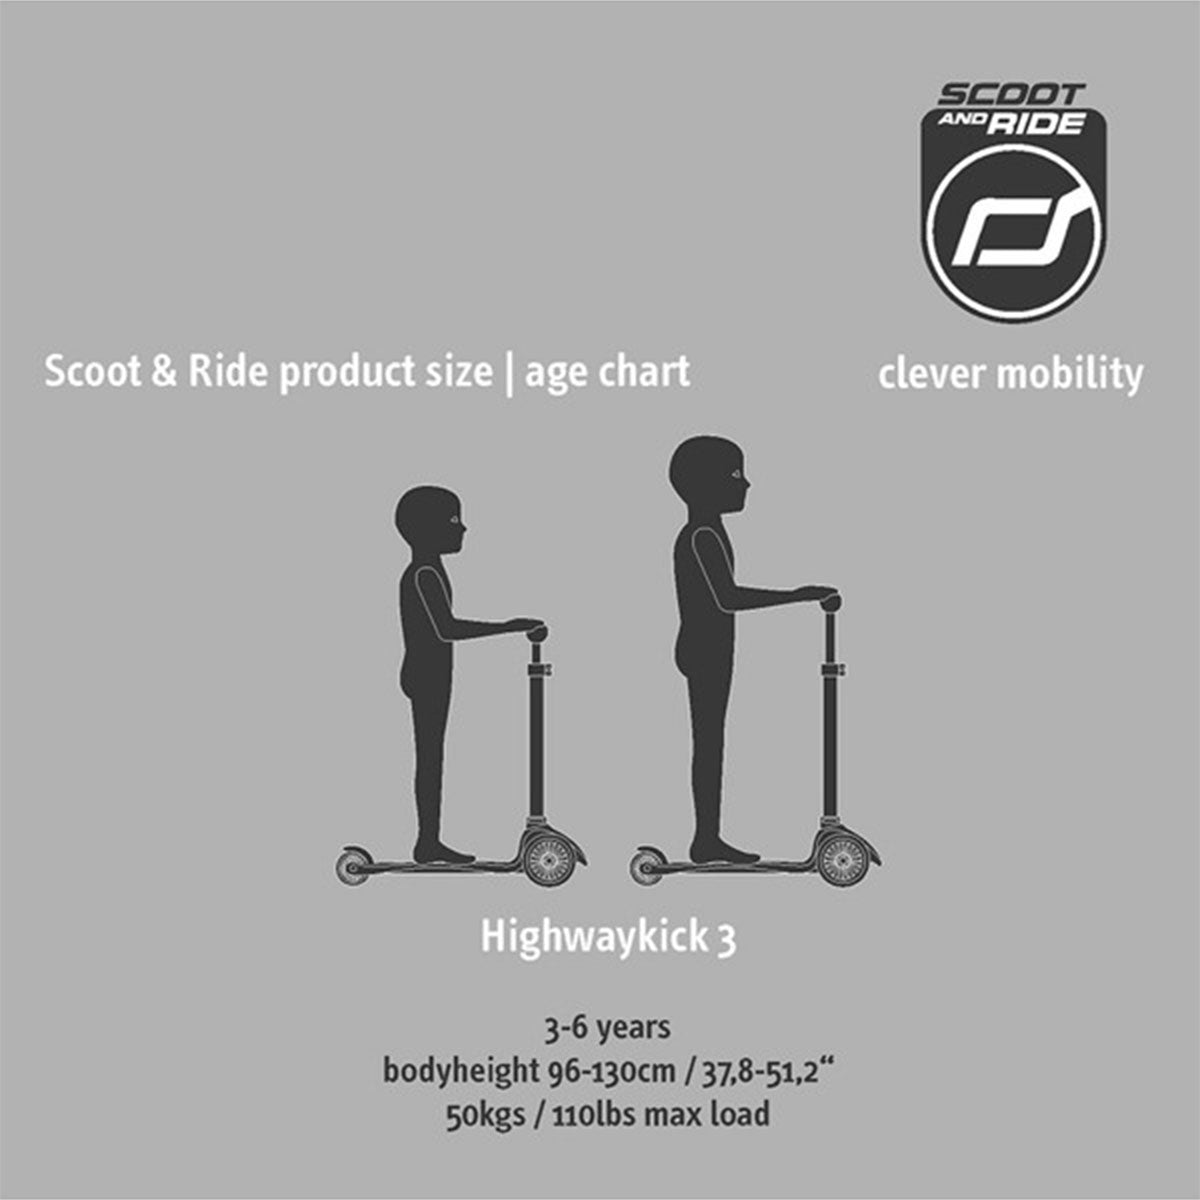 De Scoot and Ride Highwaykick 3 peach is een fijne step voor kinderen vanaf 3 jaar. De Highwaykick is goed voor de ontwikkeling van de fijne motoriek, het evenwichtsgevoel en het zelfvertrouwen van kinderen. VanZus.